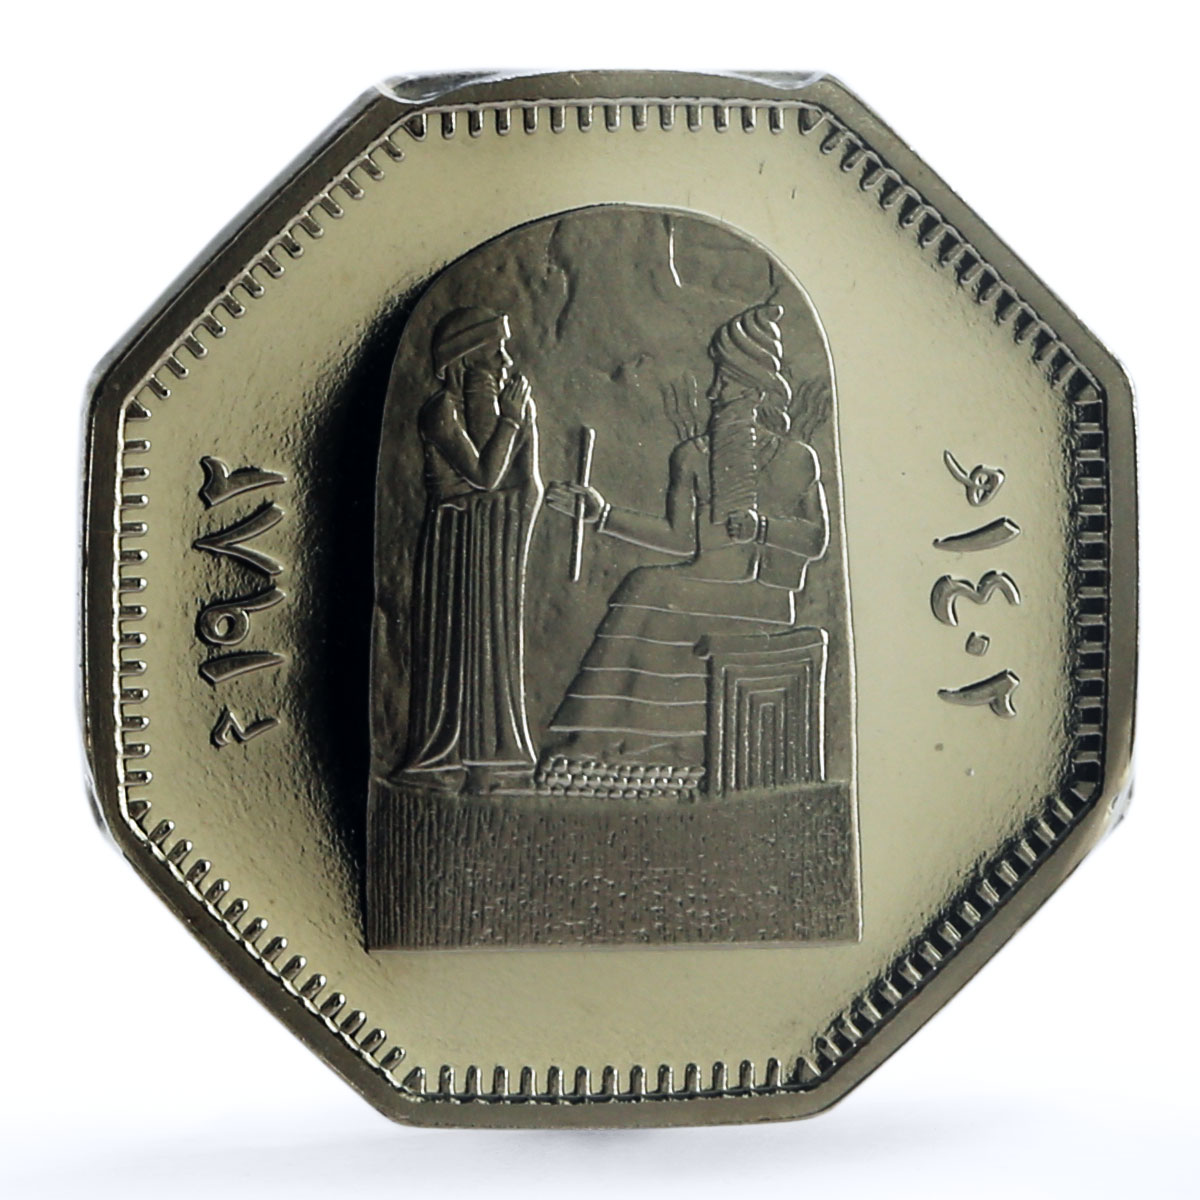 Iraq 250 fils King Hammurabi Fresсo PR70 PCGS nickel coin 1982